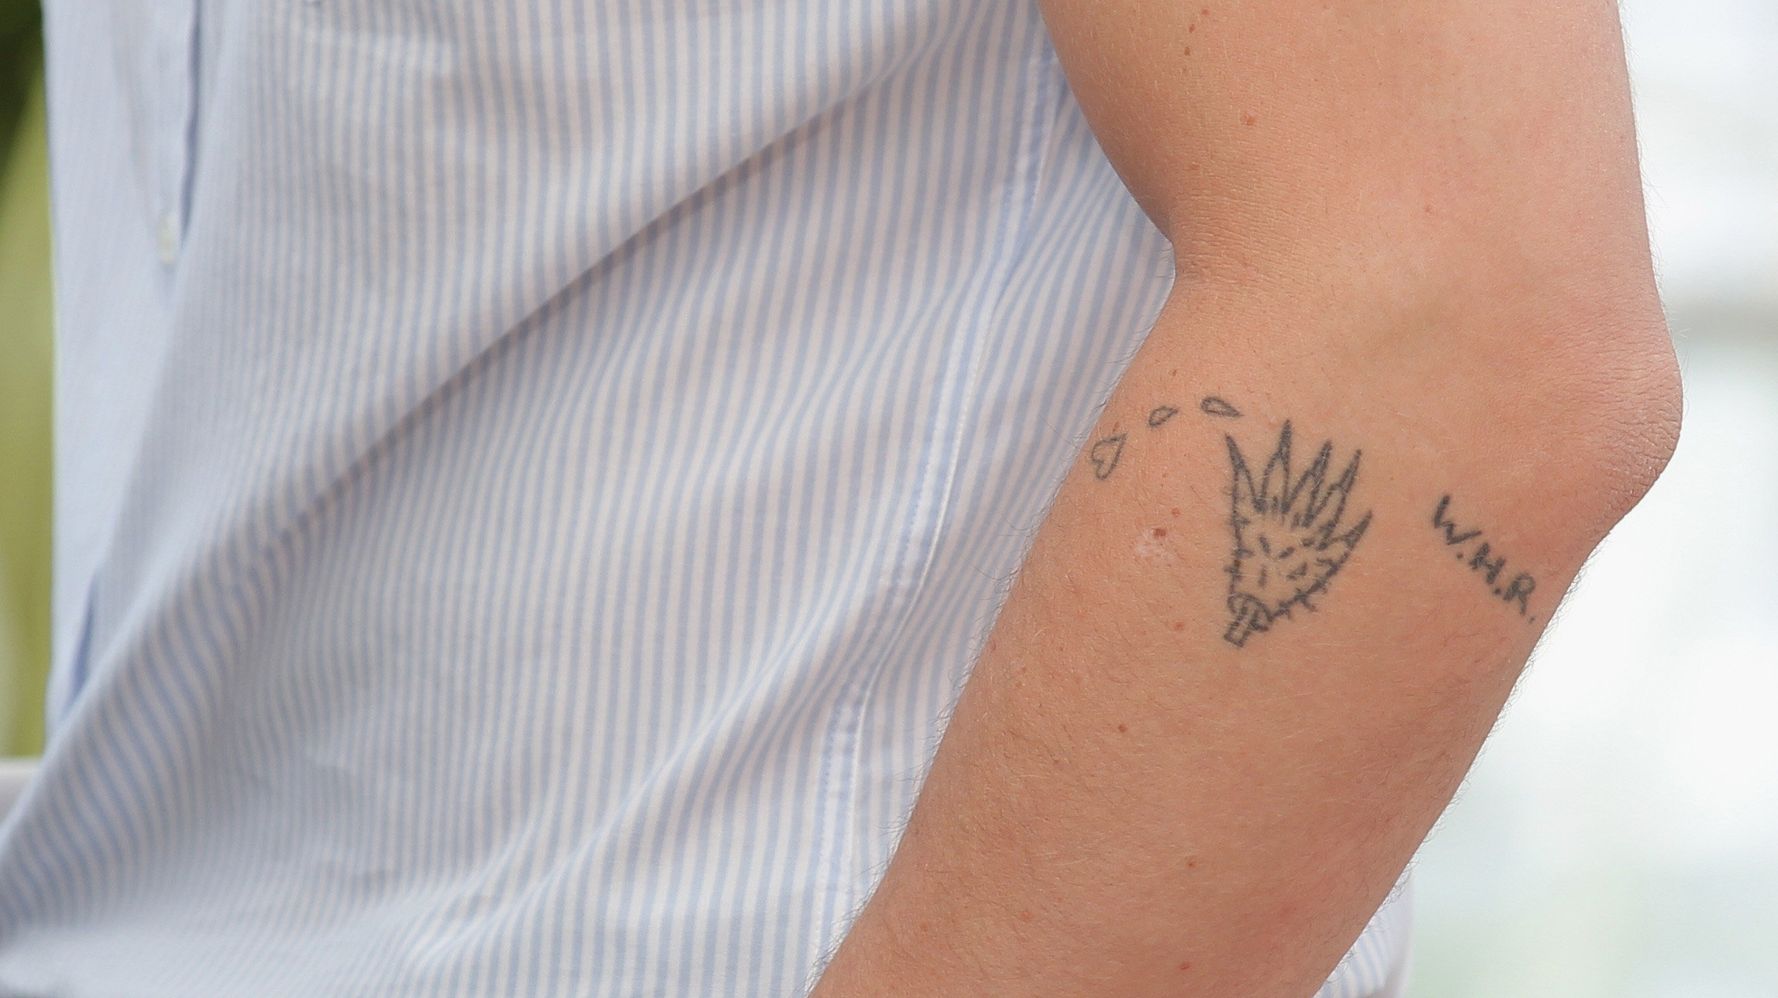 26 Tiny Tattoos For Guys To Sneak Onto Their Bodies | HuffPost Life